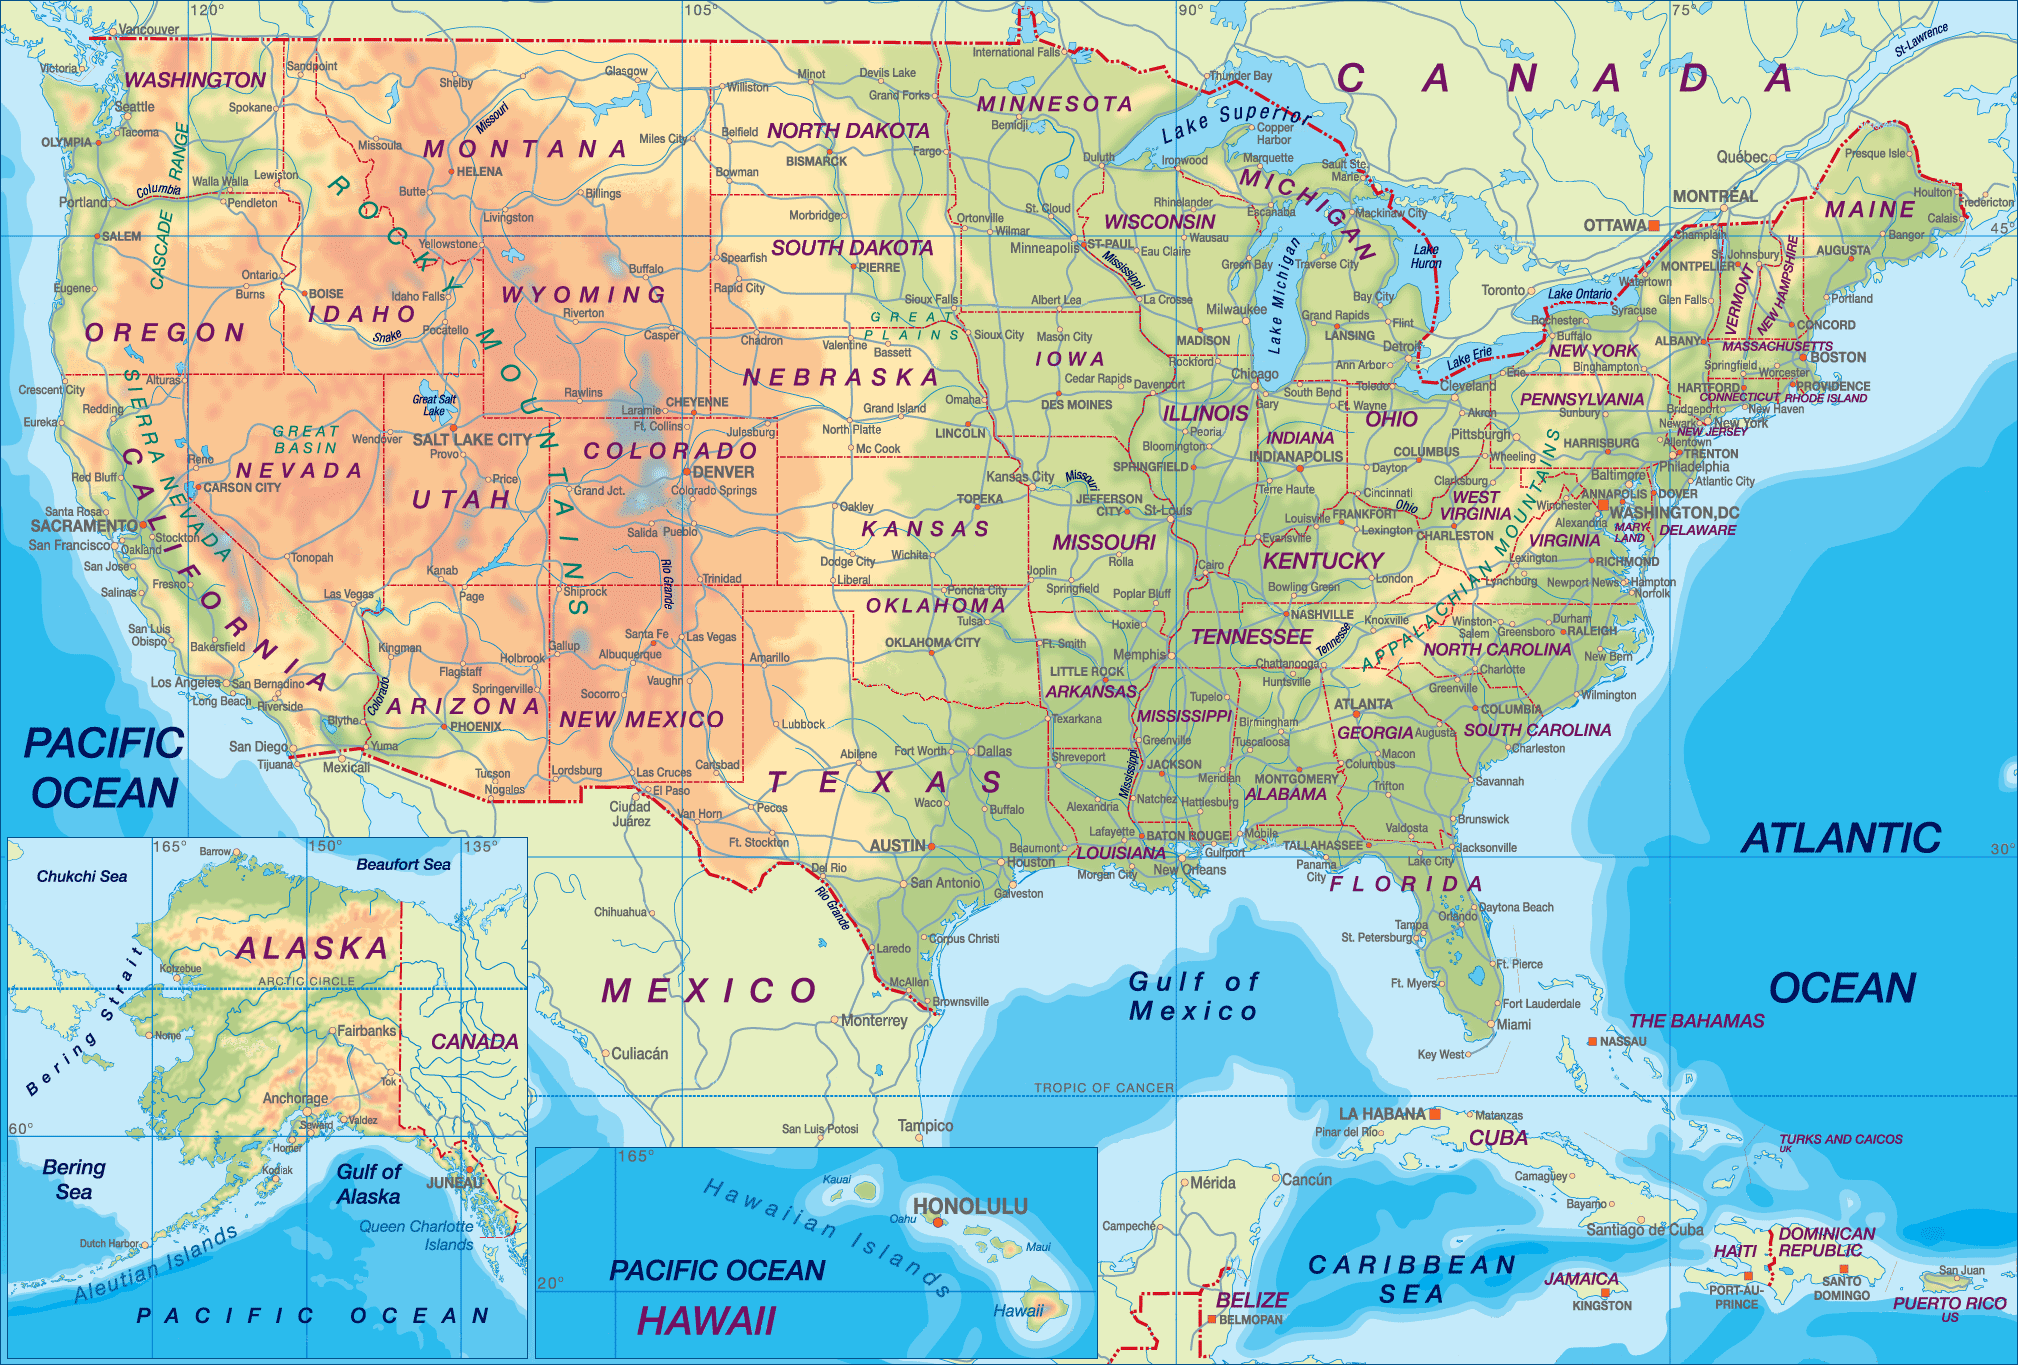 Bản đồ hành chính đầy đủ và chi tiết, bao gồm tất cả 50 tiểu bang của Hoa Kỳ